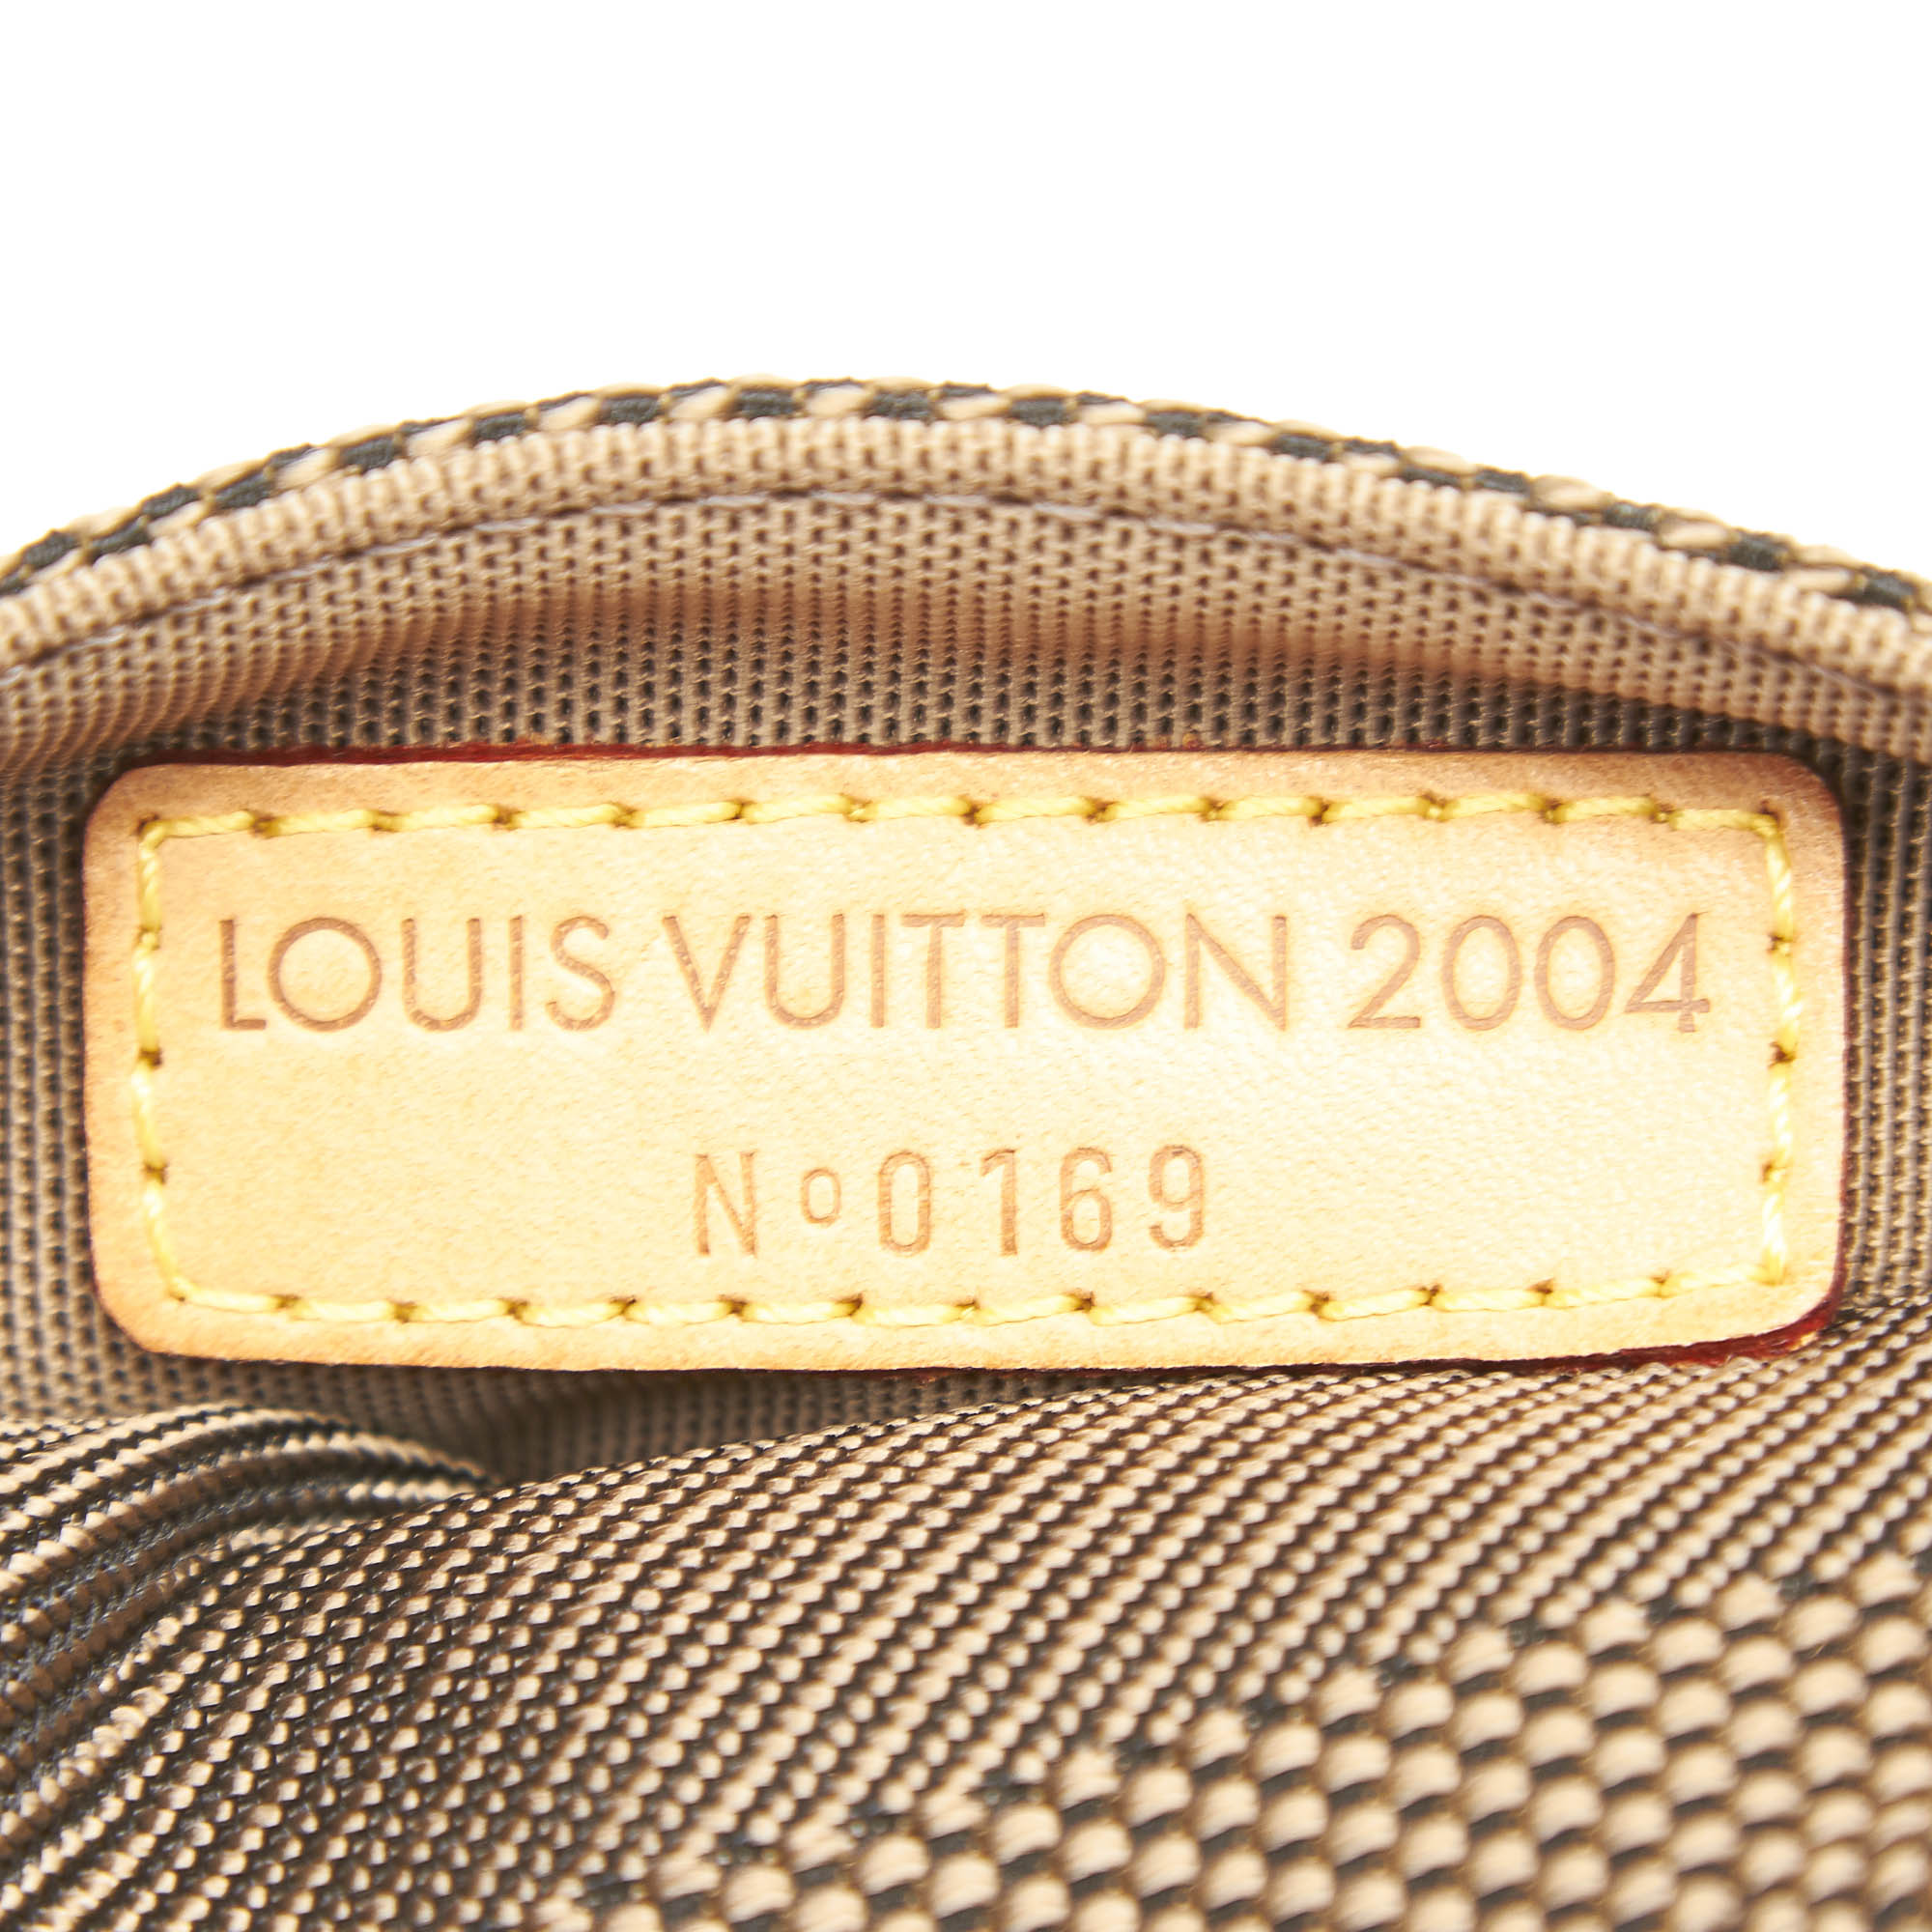 Louis Vuitton Vintage - Damier Geant Athens Olympics Jogging Belt